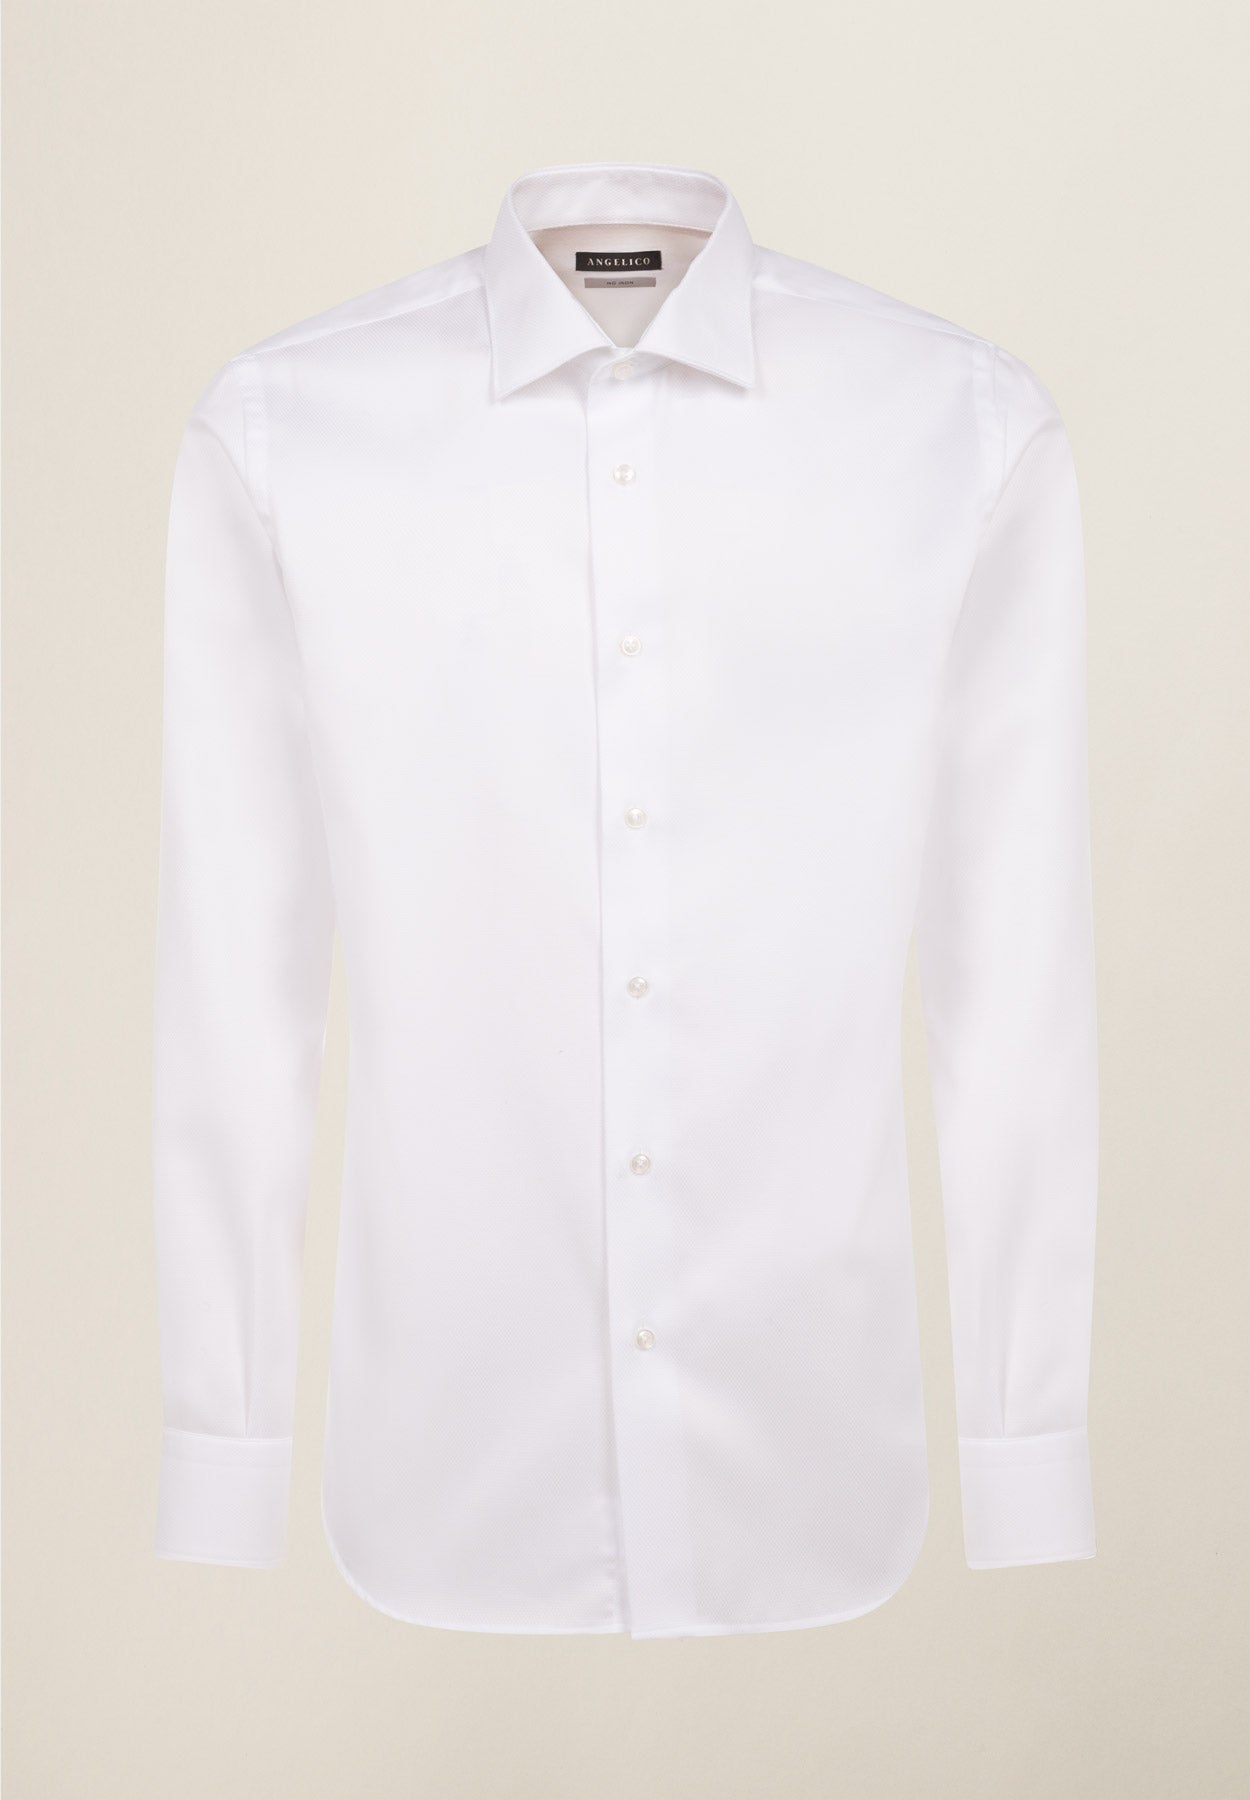 White shirt armor no-stiro slim fit